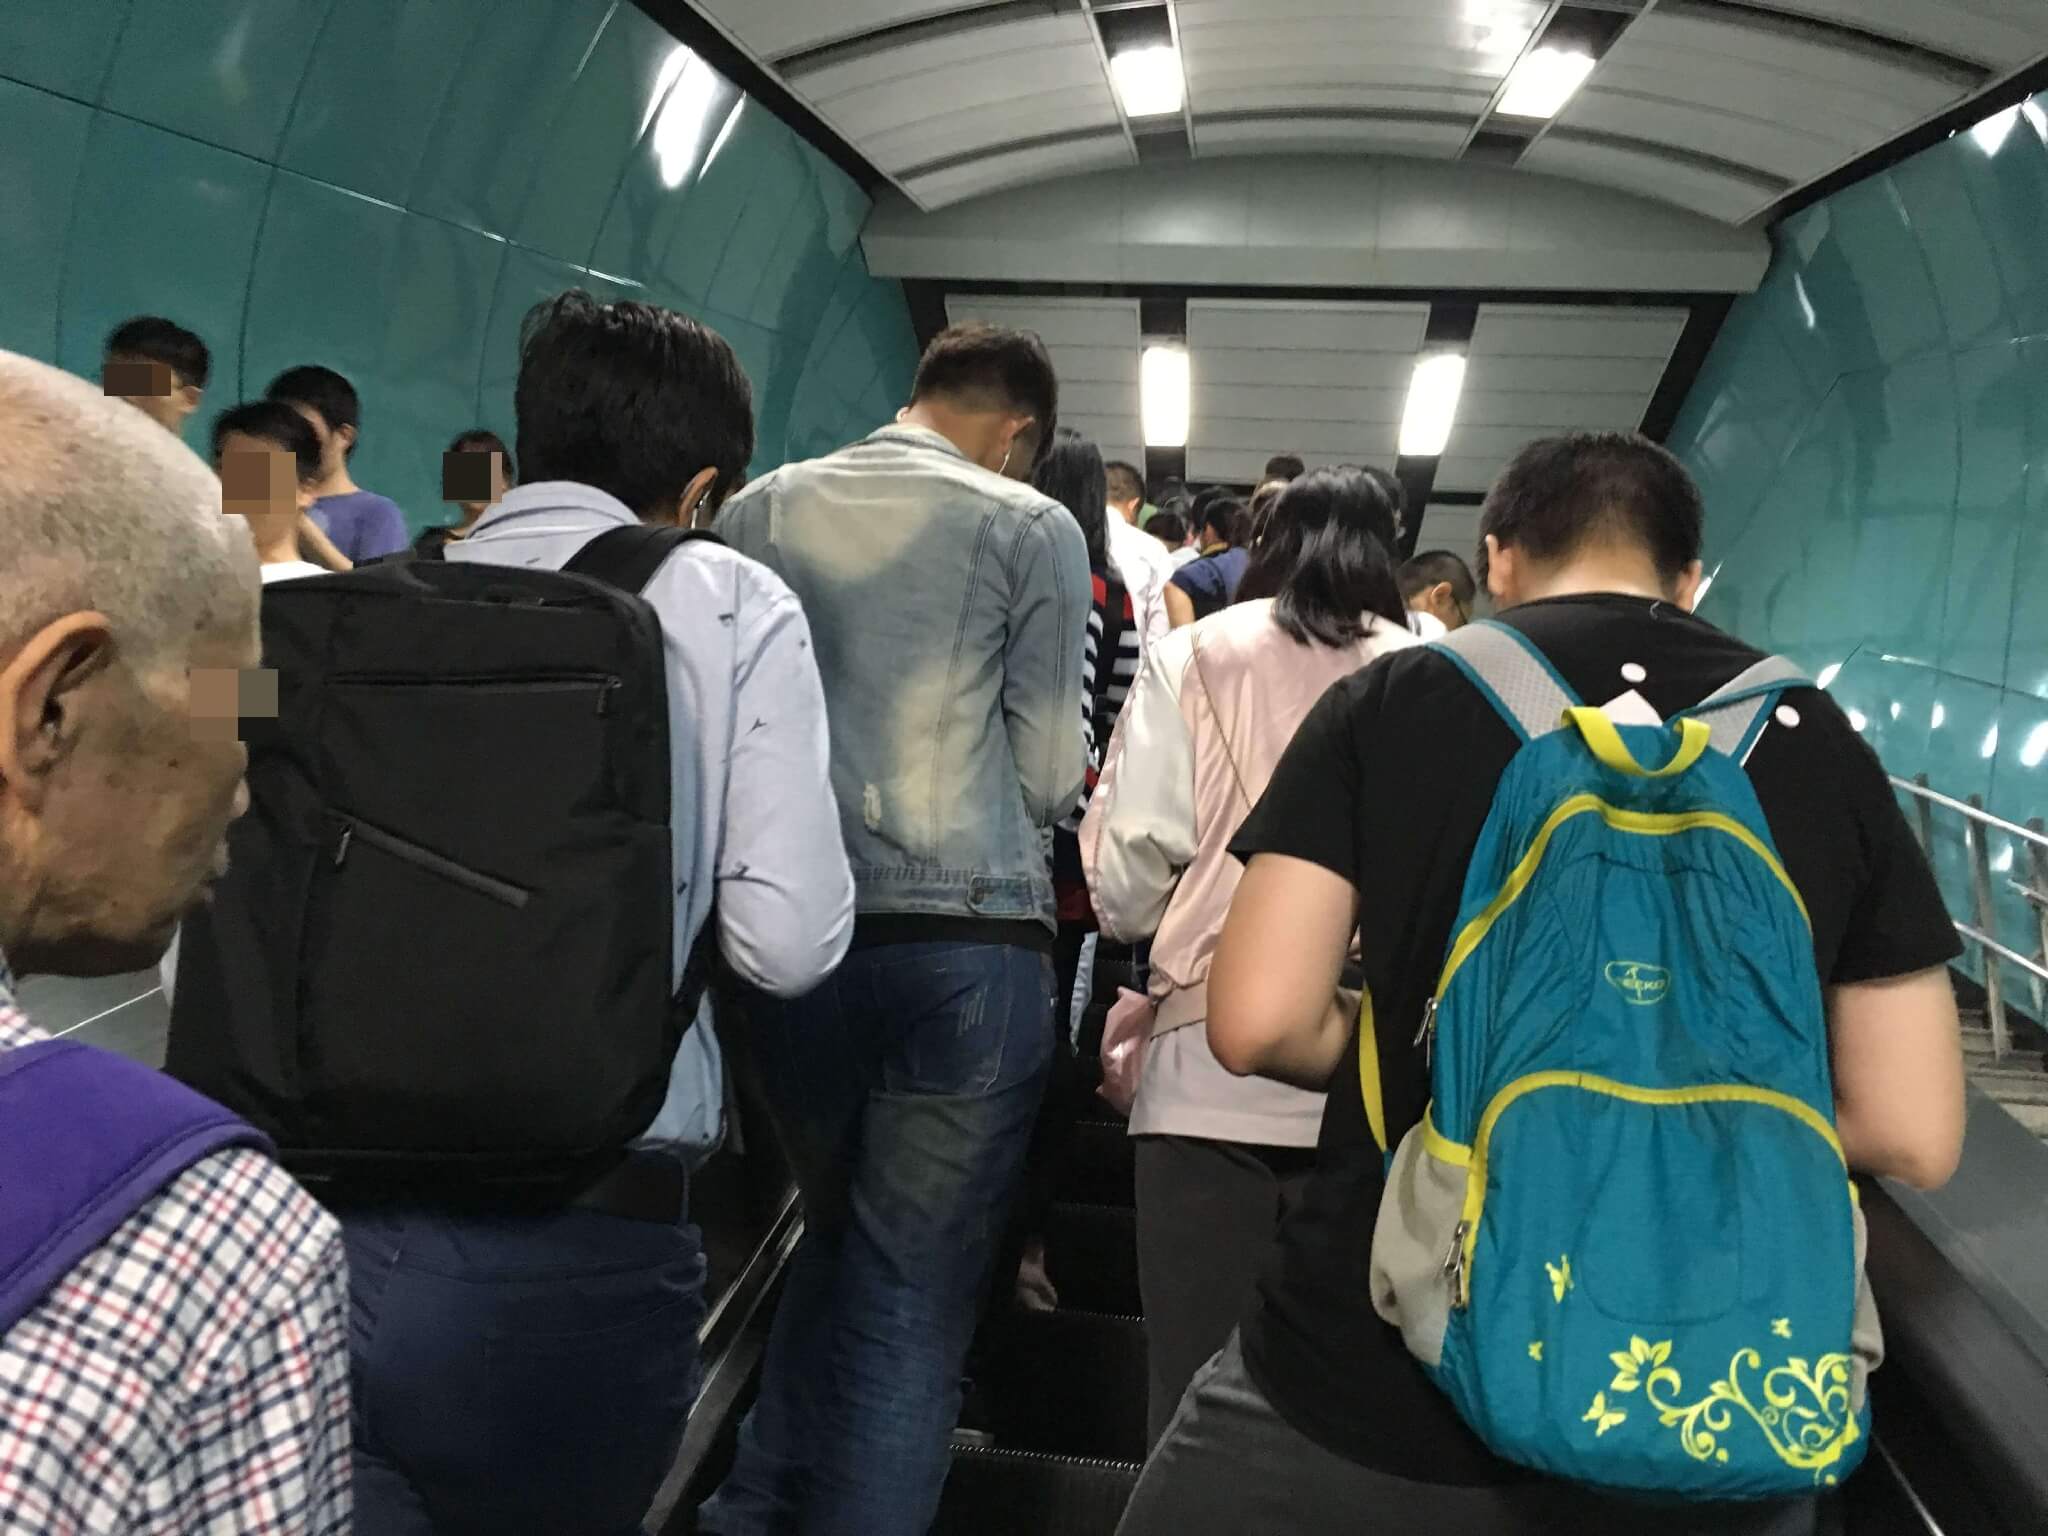 中国の駅構内で、人が大勢いる写真。